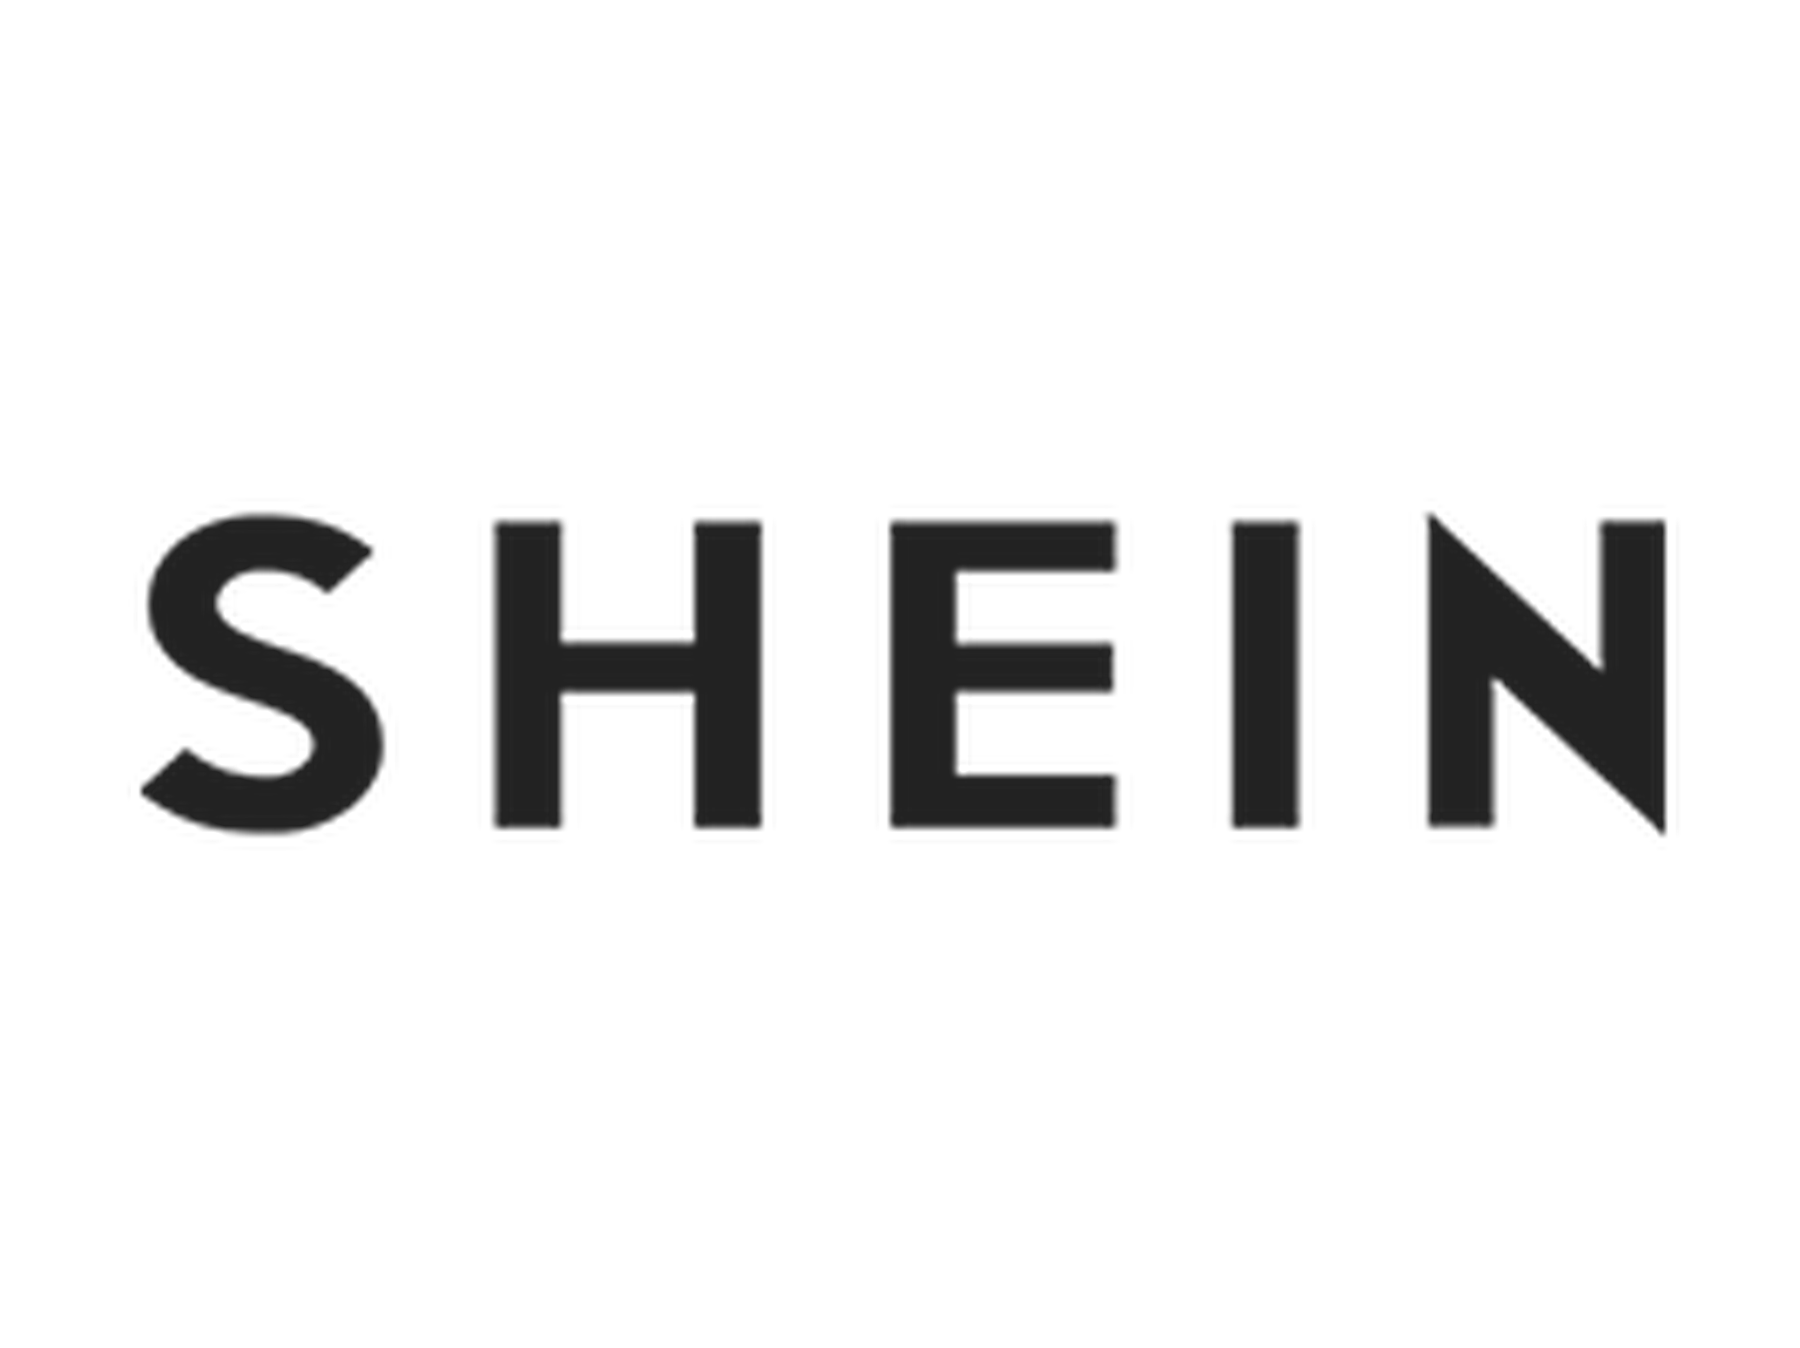 SheIn Promo Code